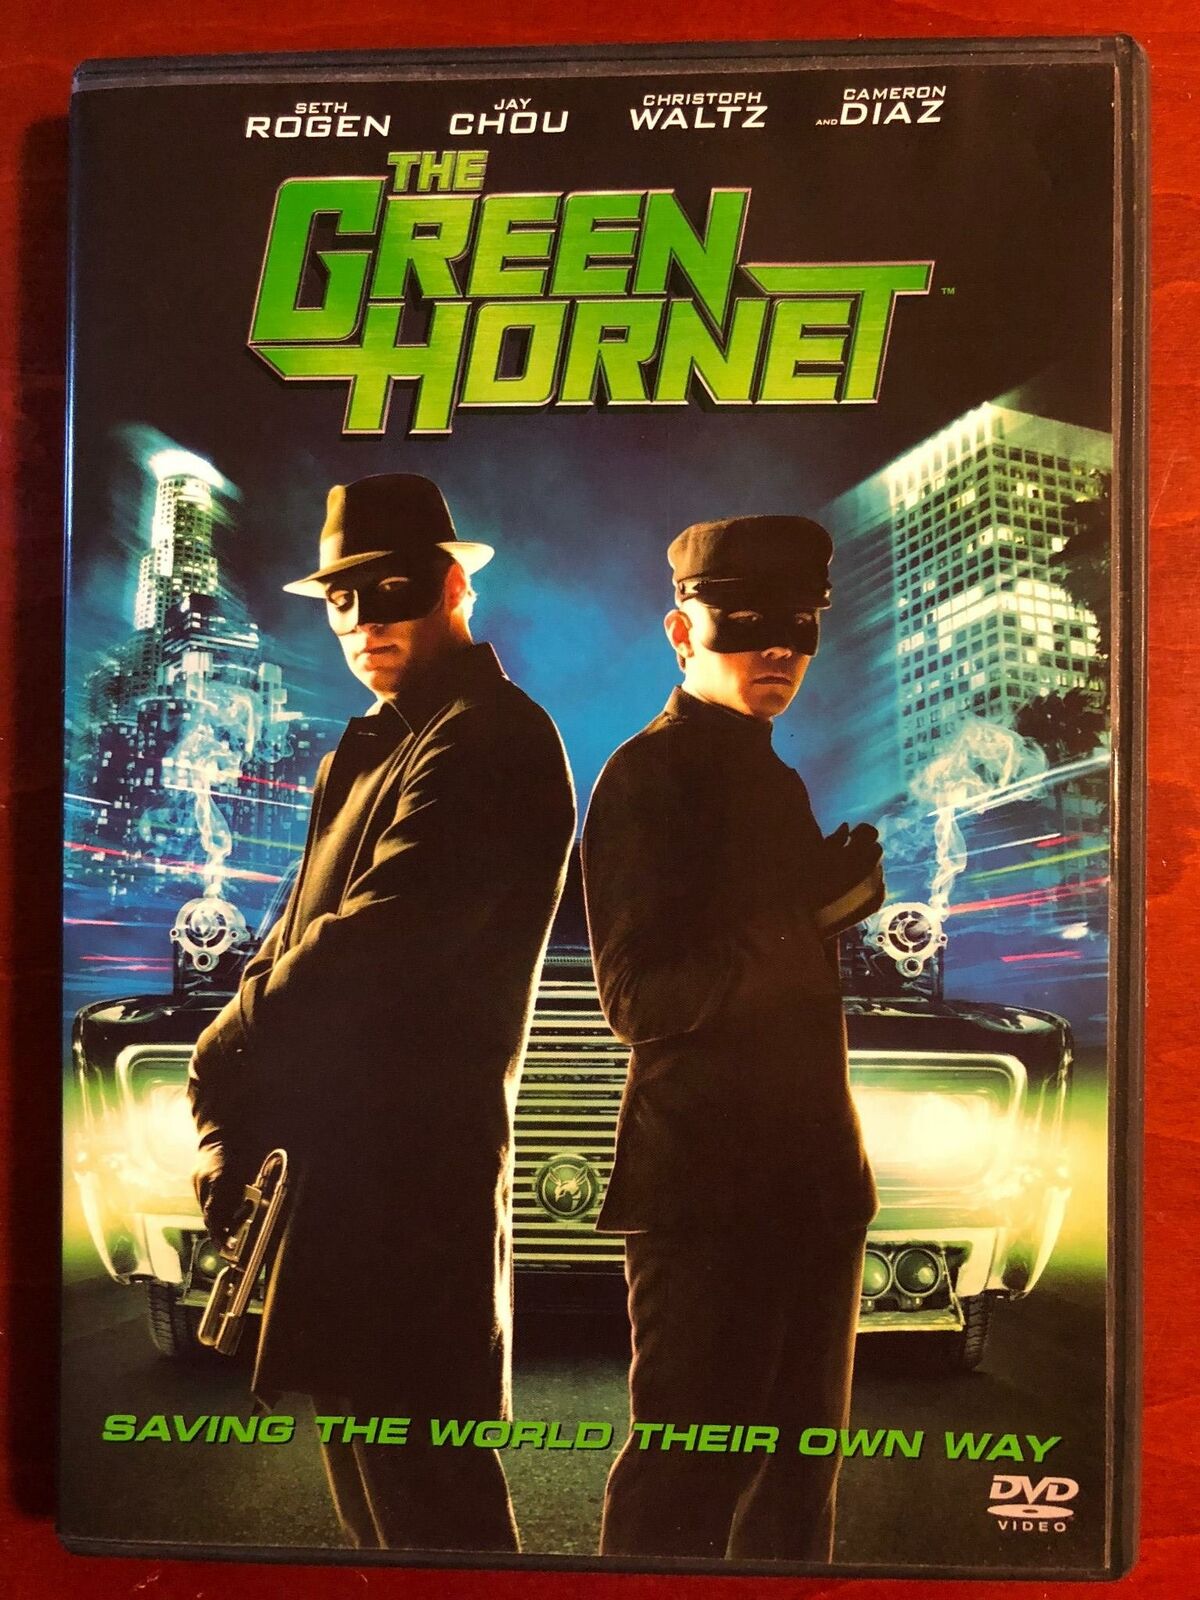 The Green Hornet (DVD, 2011) - G1122